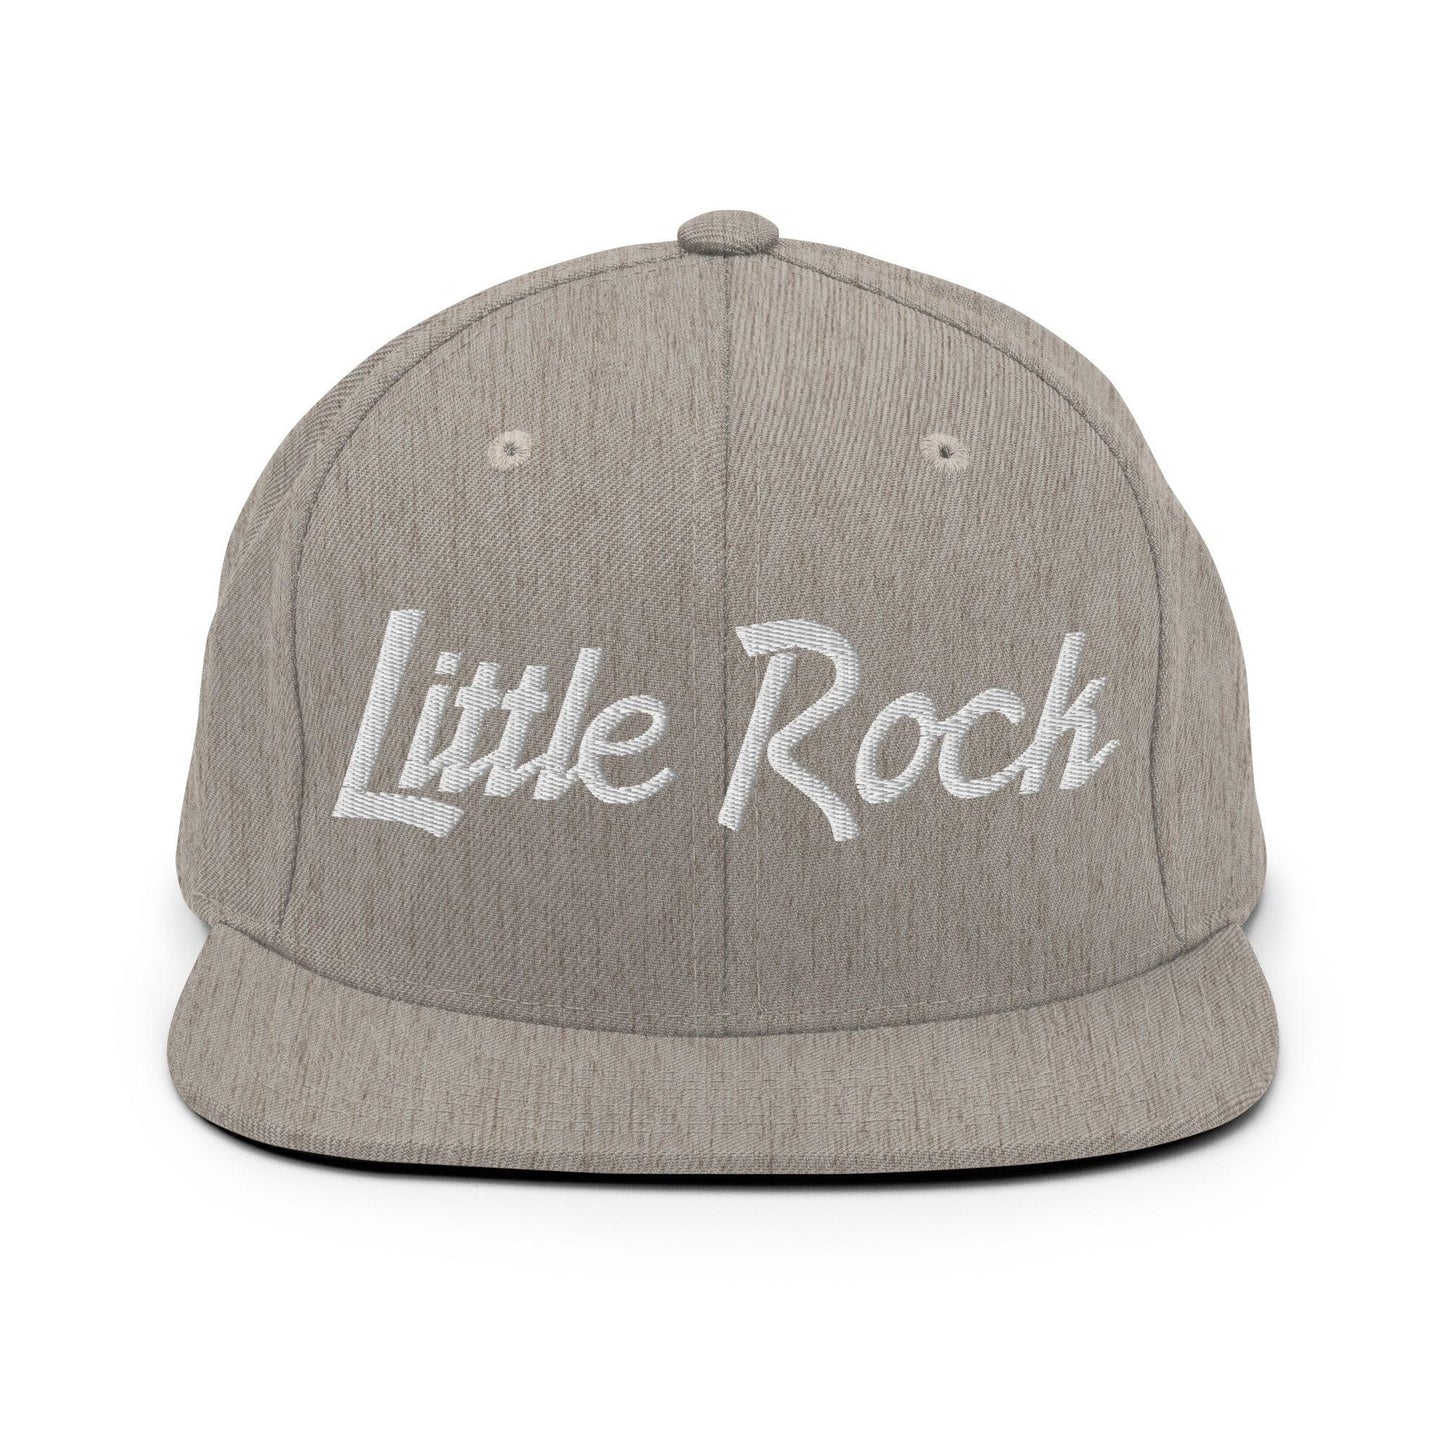 Little Rock Script Snapback Hat Heather Grey